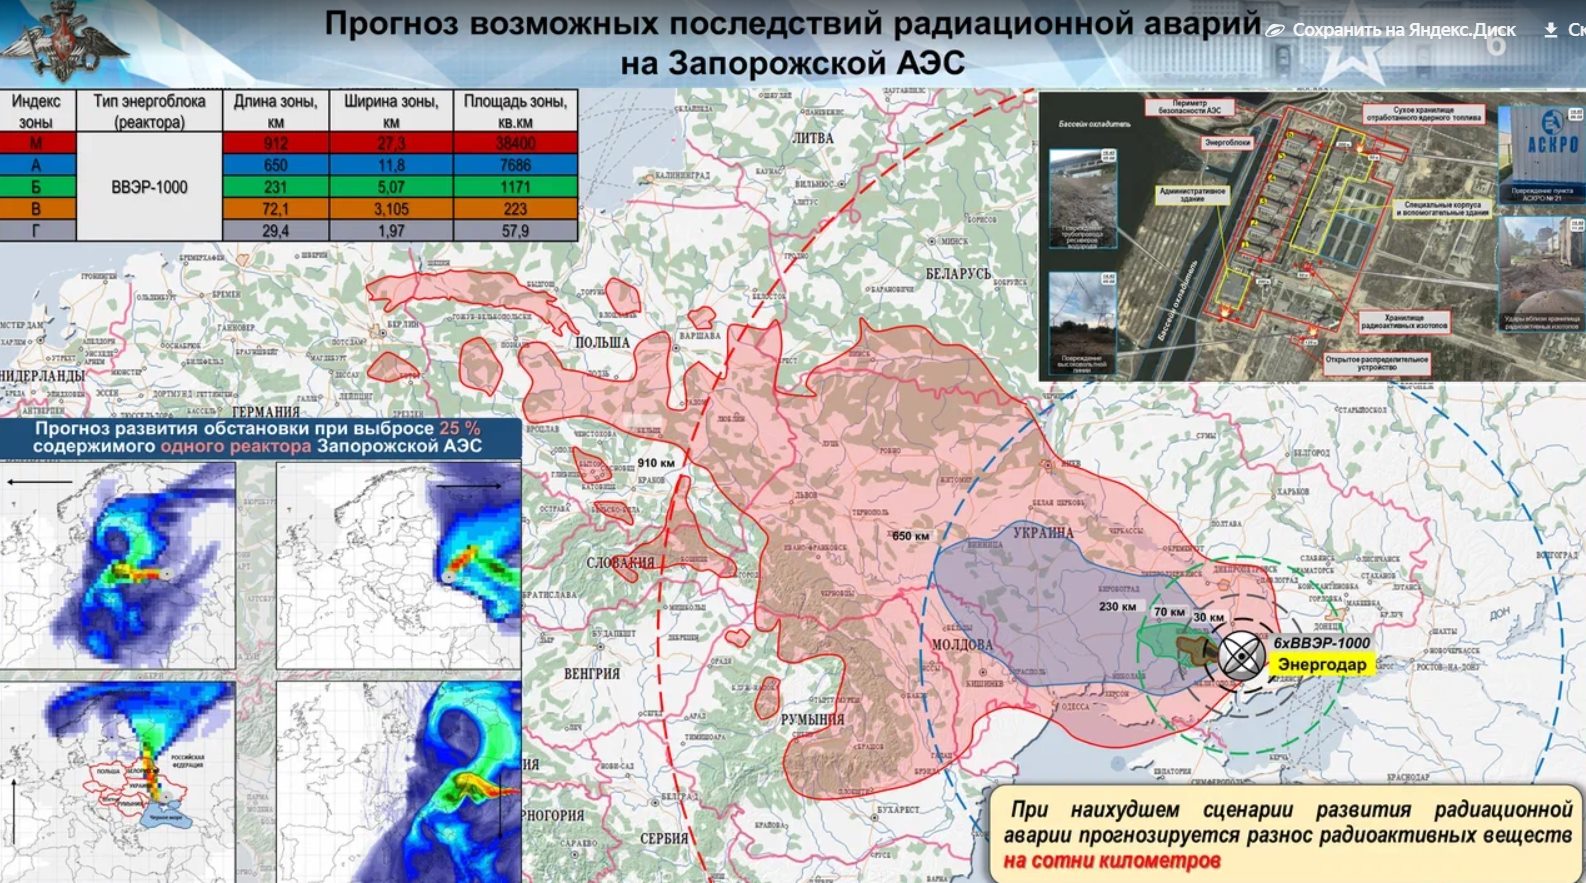 Минобороны показало карту последствий в случае катастрофы на ЗапорожскойАЭС - Брянский ворчун